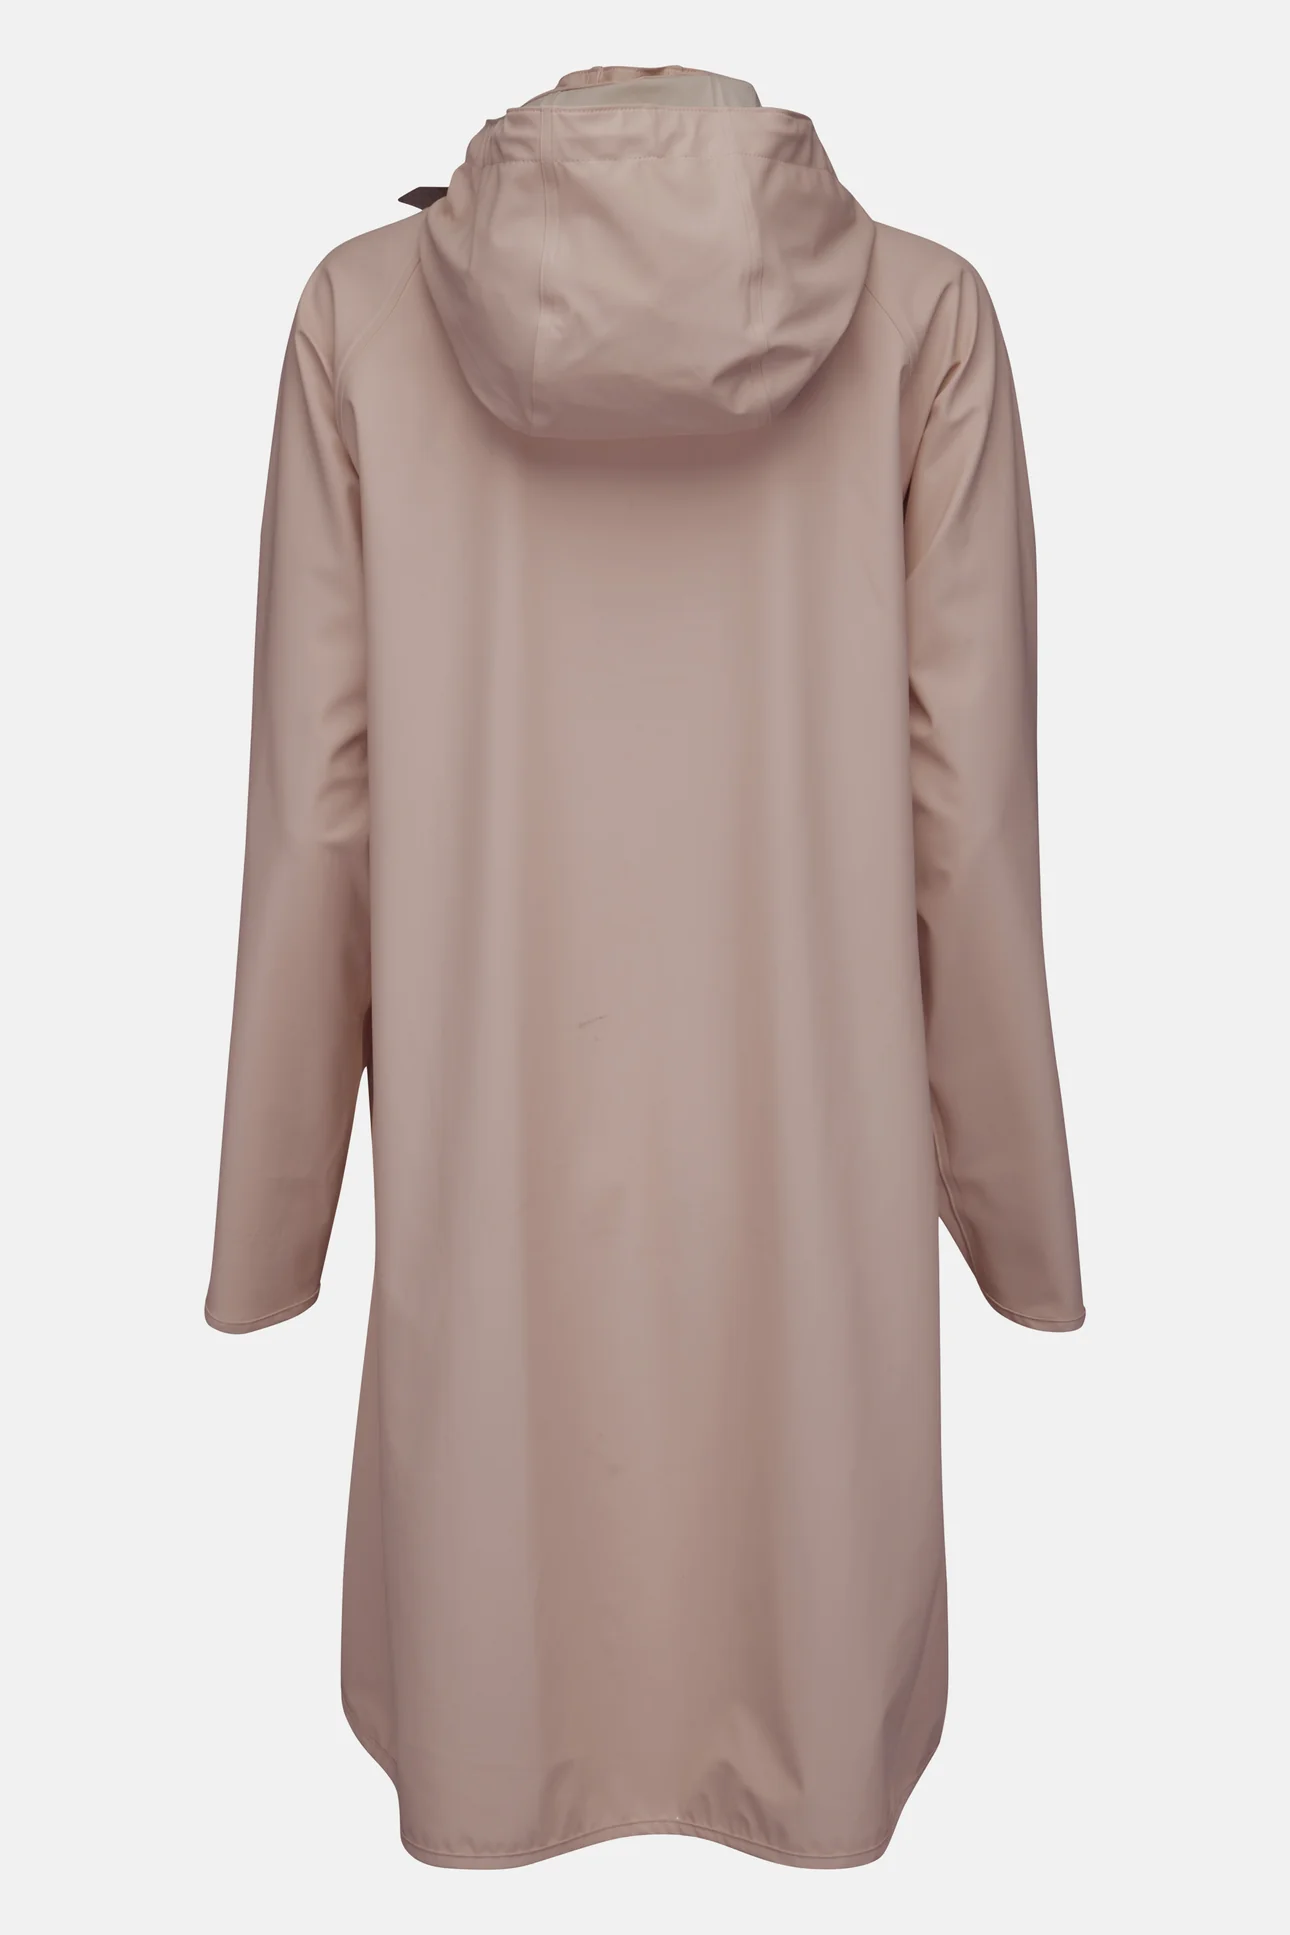 Ilse Jacobsen Raincoat - Adobe Rose Clothing - Outerwear - Coats by Ilse Jacobsen | Grace the Boutique